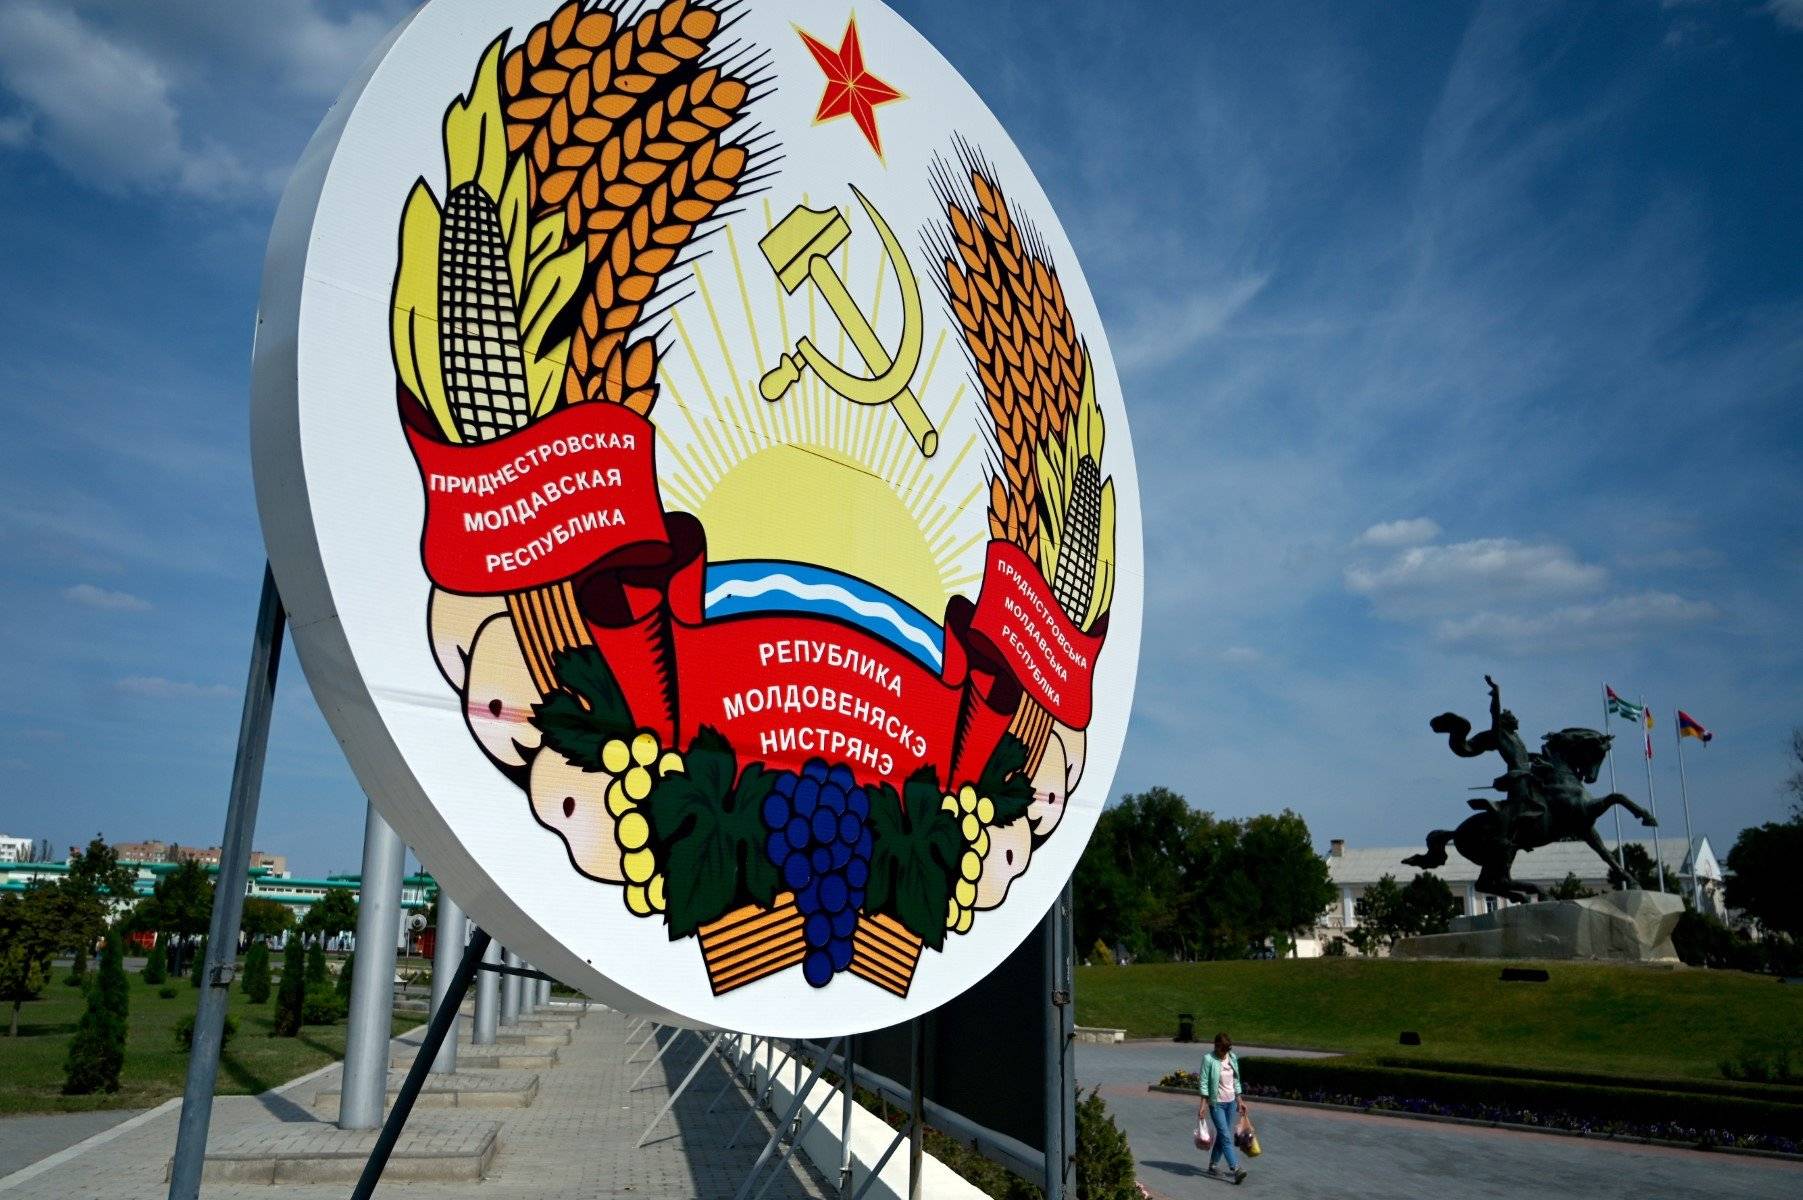 Godło separatystycznej respubliki Naddniestrza w kształce godła ZSRR z sierpem i młotem po środku